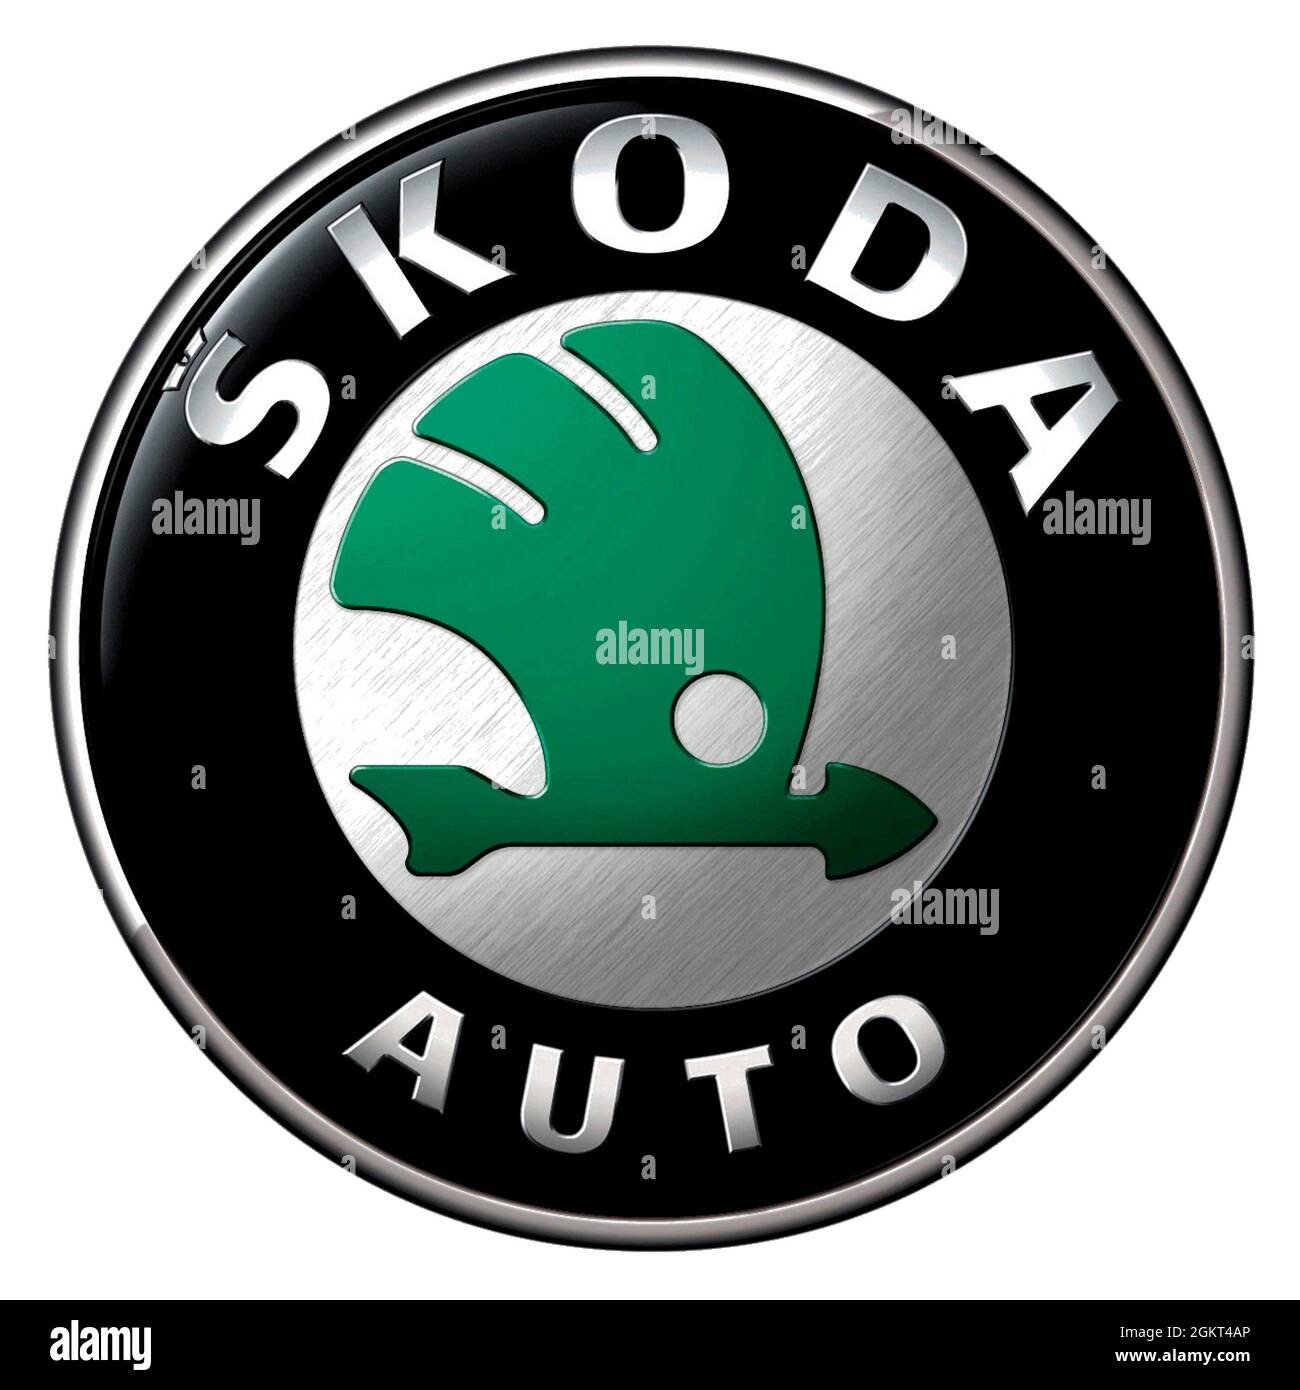 Logo aziendale del produttore automobilistico ceco Skoda con sede a Mlada Boleslav - filiale del gruppo tedesco di produzione di automobili Volkswagen Foto Stock